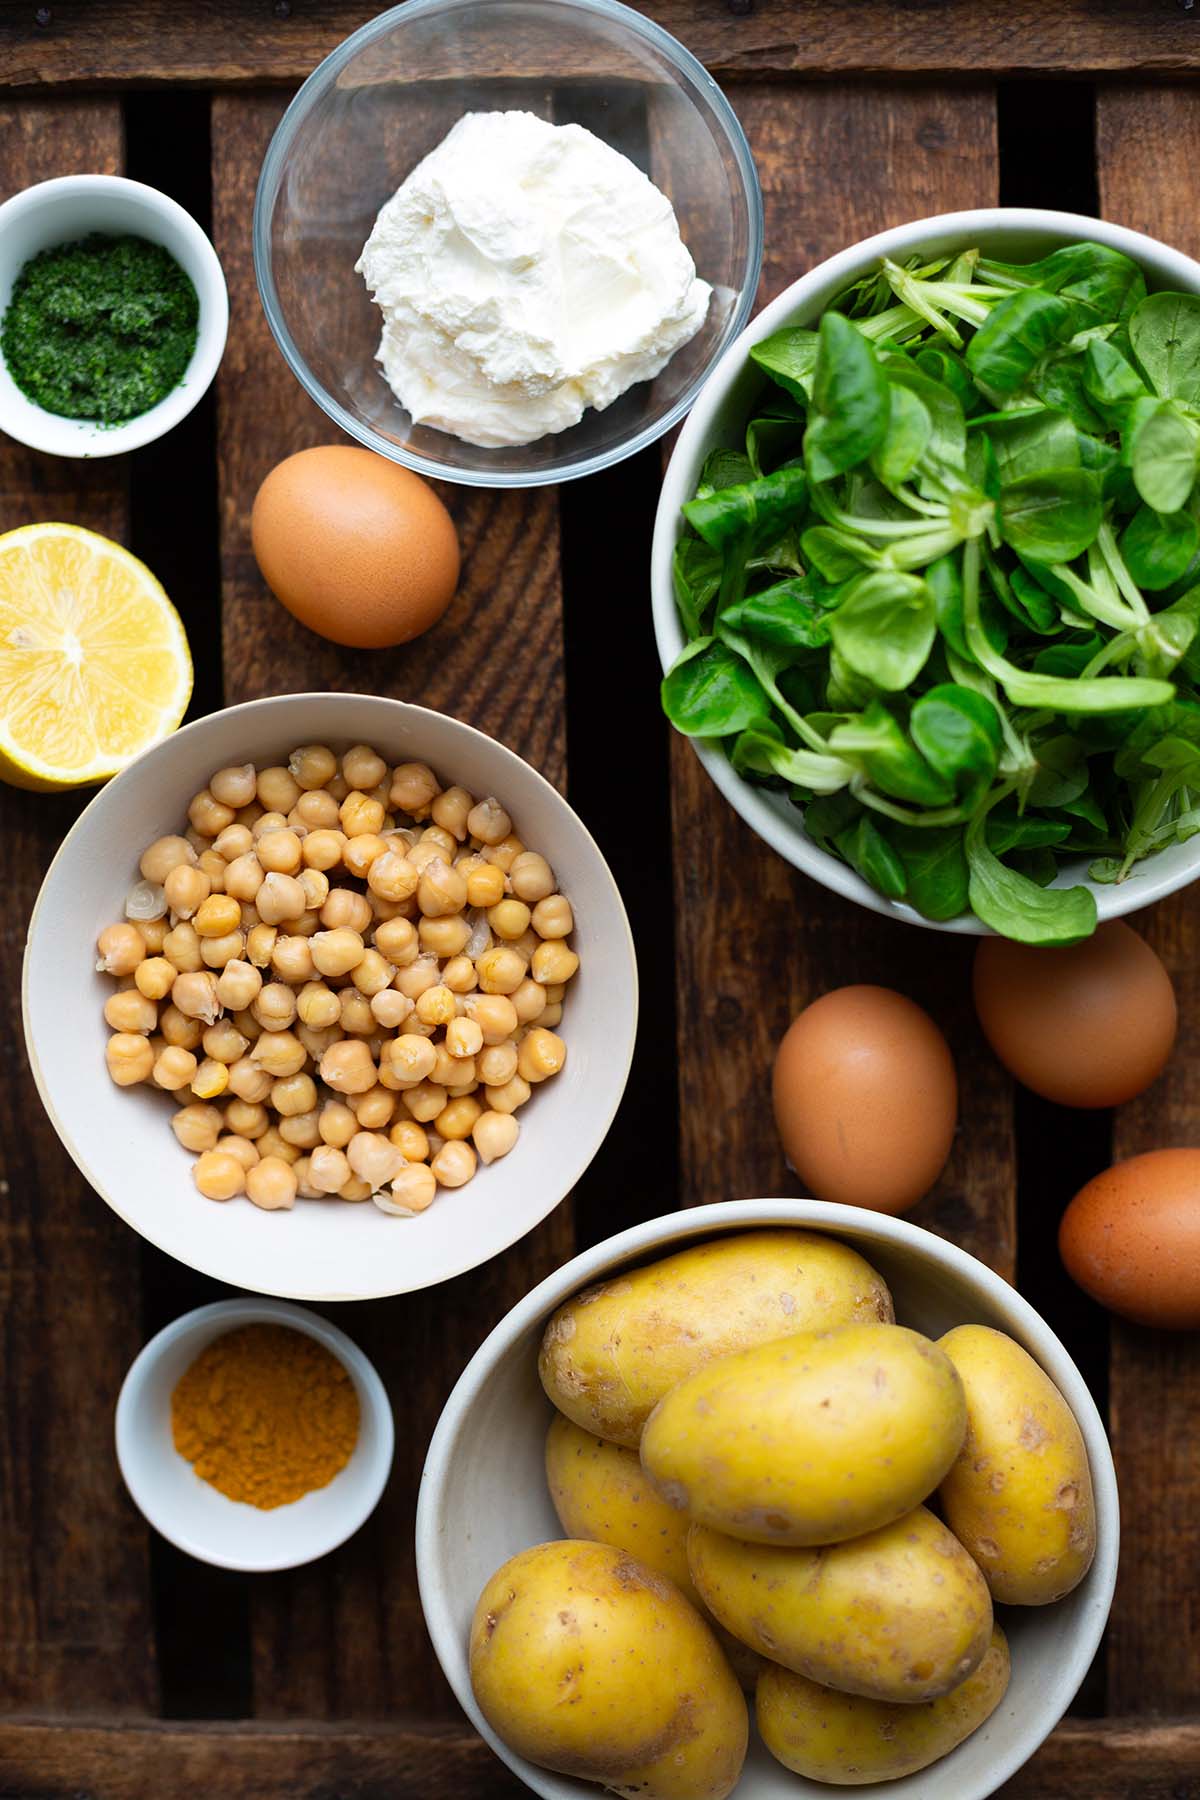 Zutaten für die gesunde Salat Bowl. Zu sehen sind: Kichererbsen, Kartoffel, Magerquark, Eier, Zitrone, Dill und Feldsalat.